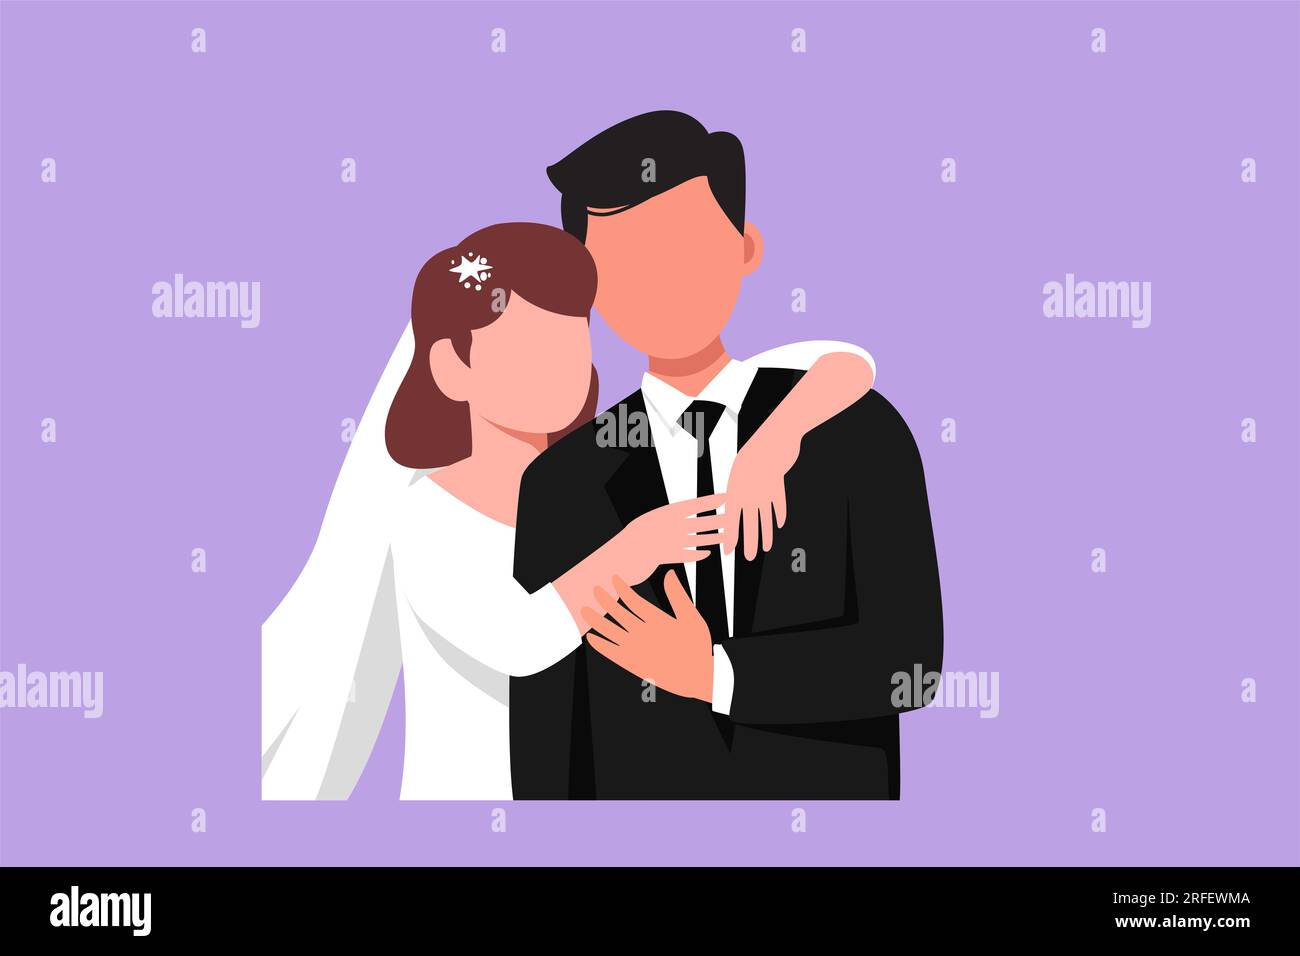 Figur-Zeichnung von Liebhabern, Mann mit Anzug und Frau mit Hochzeitskleid,  die sich umarmen. Ein Paar in einer Beziehung, das verliebt ist.  Glücklicher Ehemann, der sich umarmt Stockfotografie - Alamy